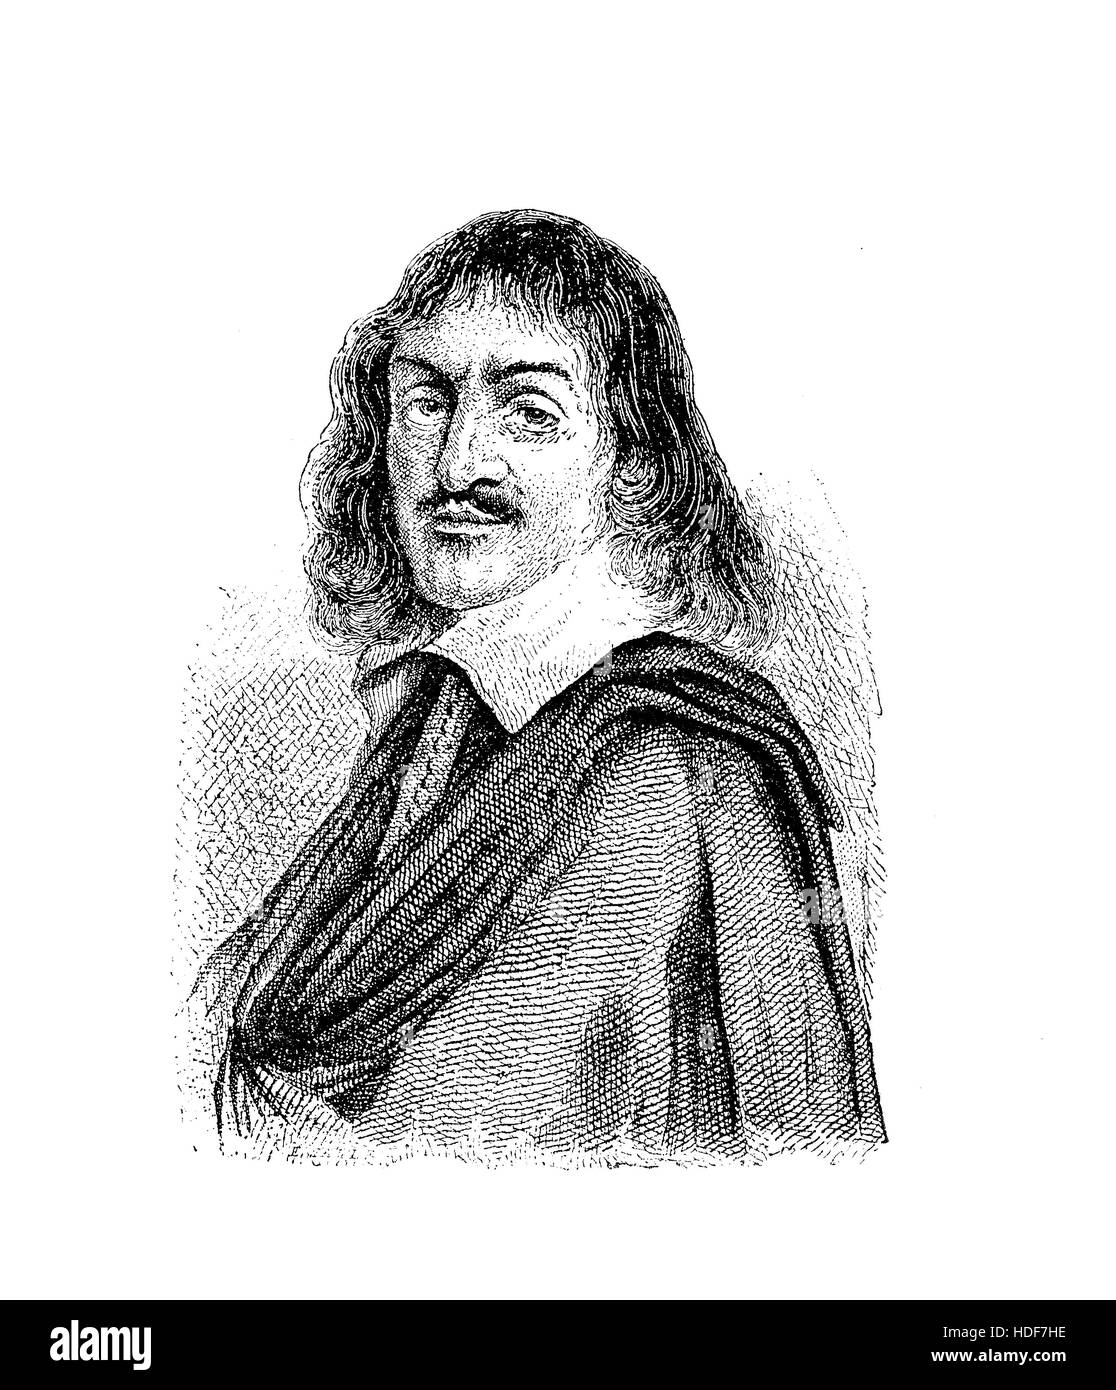 Retrato de René Descartes (31 de marzo de 1596 - 11 de febrero de 1650),  conocido también como Renatus Cartesius, filósofo, matemático y científico  , padre de la geometría analítica, del cálculo